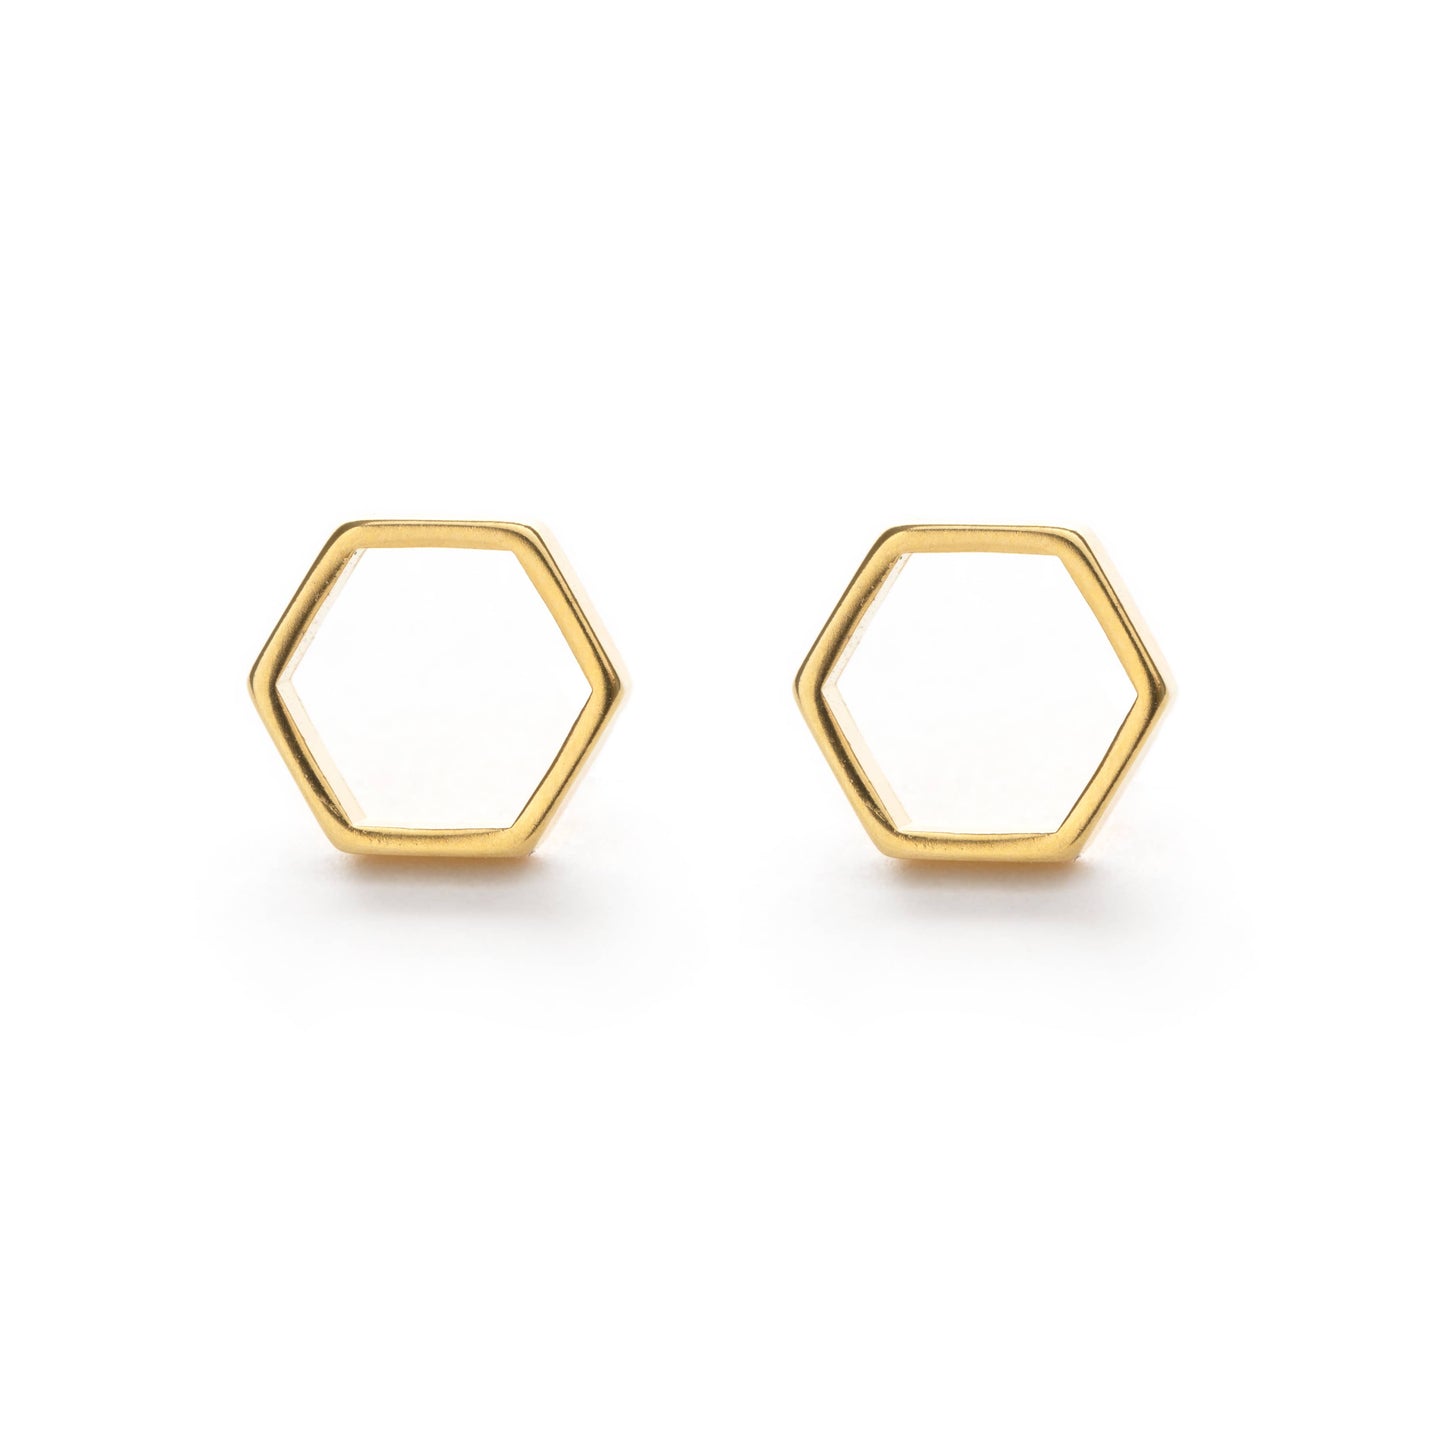 Amano Studio - Hexagon Stud Earrings